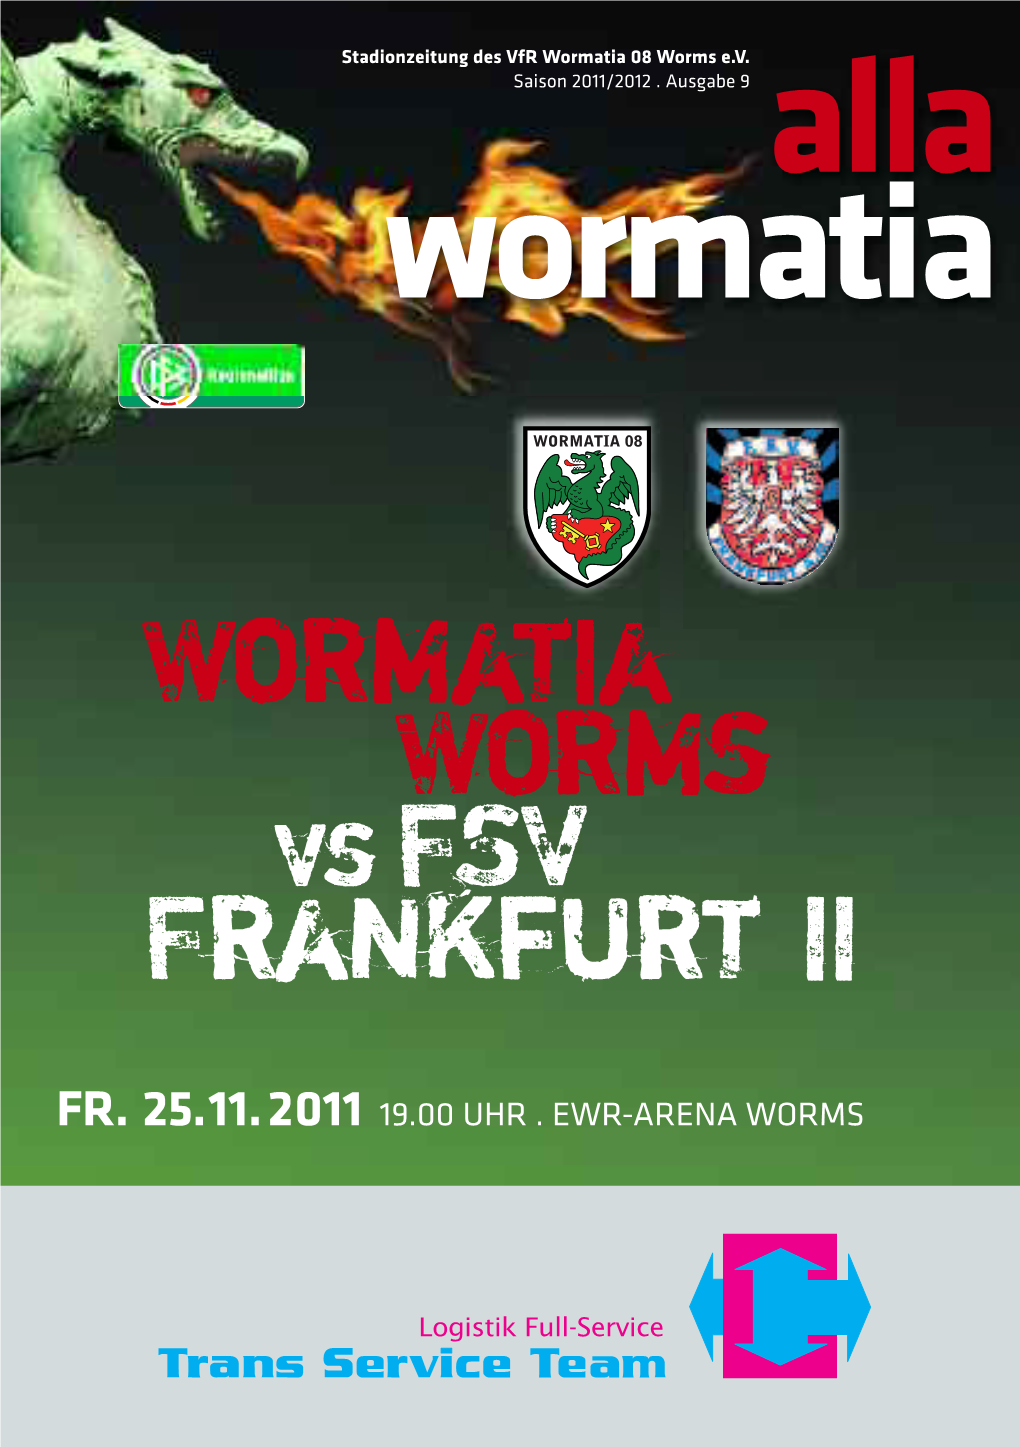 Wormatia Worms Vsfsv Frankfurt II